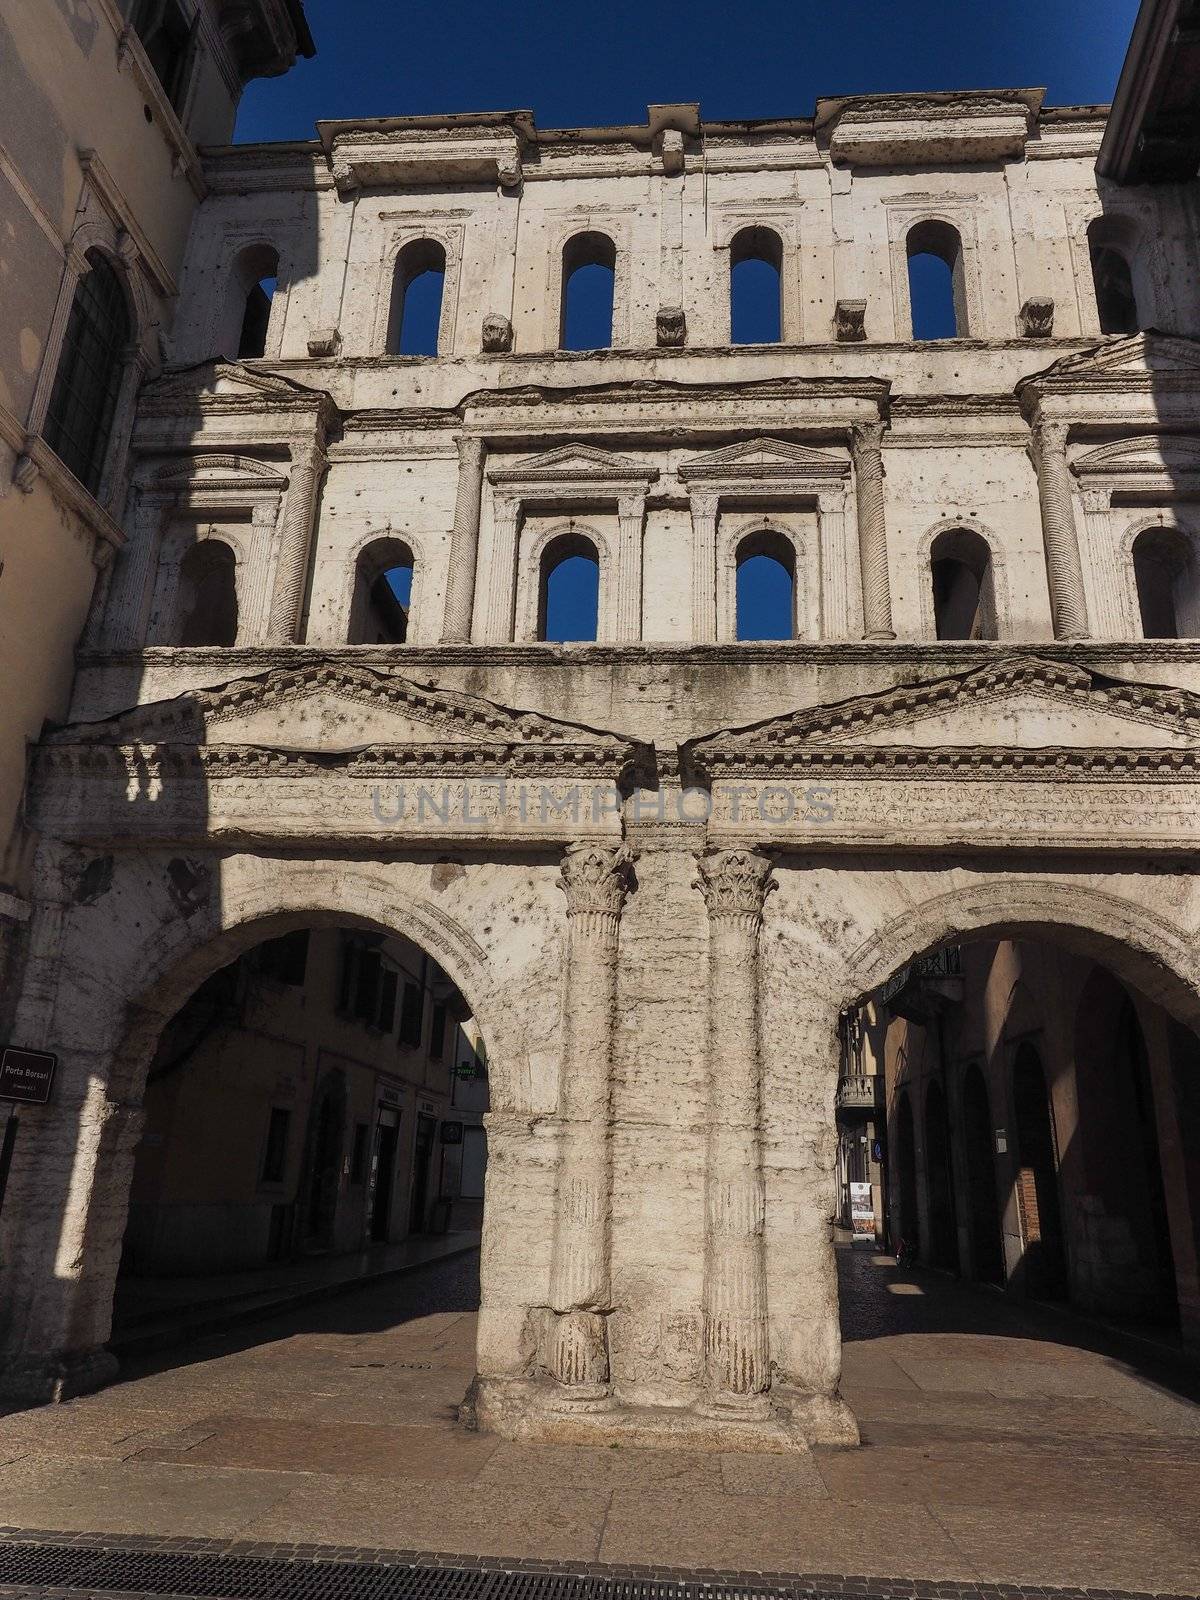 Porta Borsari city gate in Verona by claudiodivizia